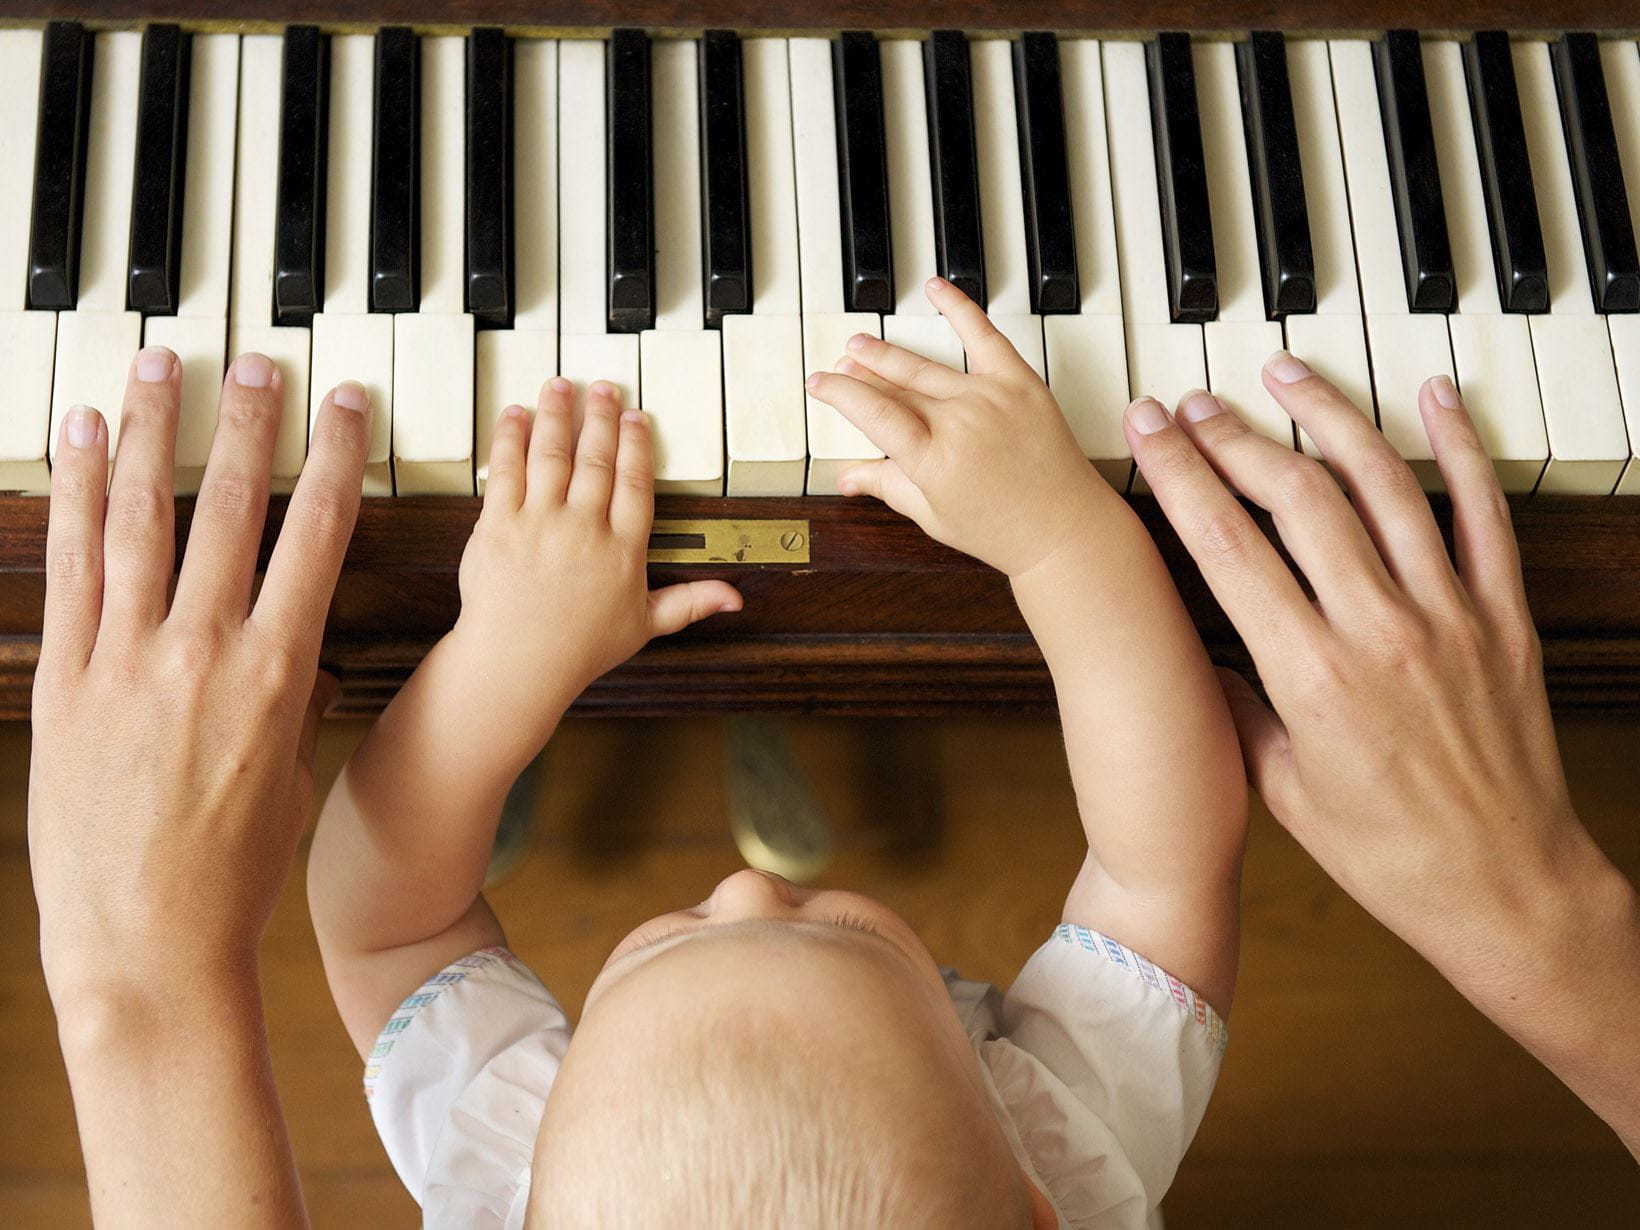 Berceuse pour Bébé Dodo – Musique pour enfant au piano, musique